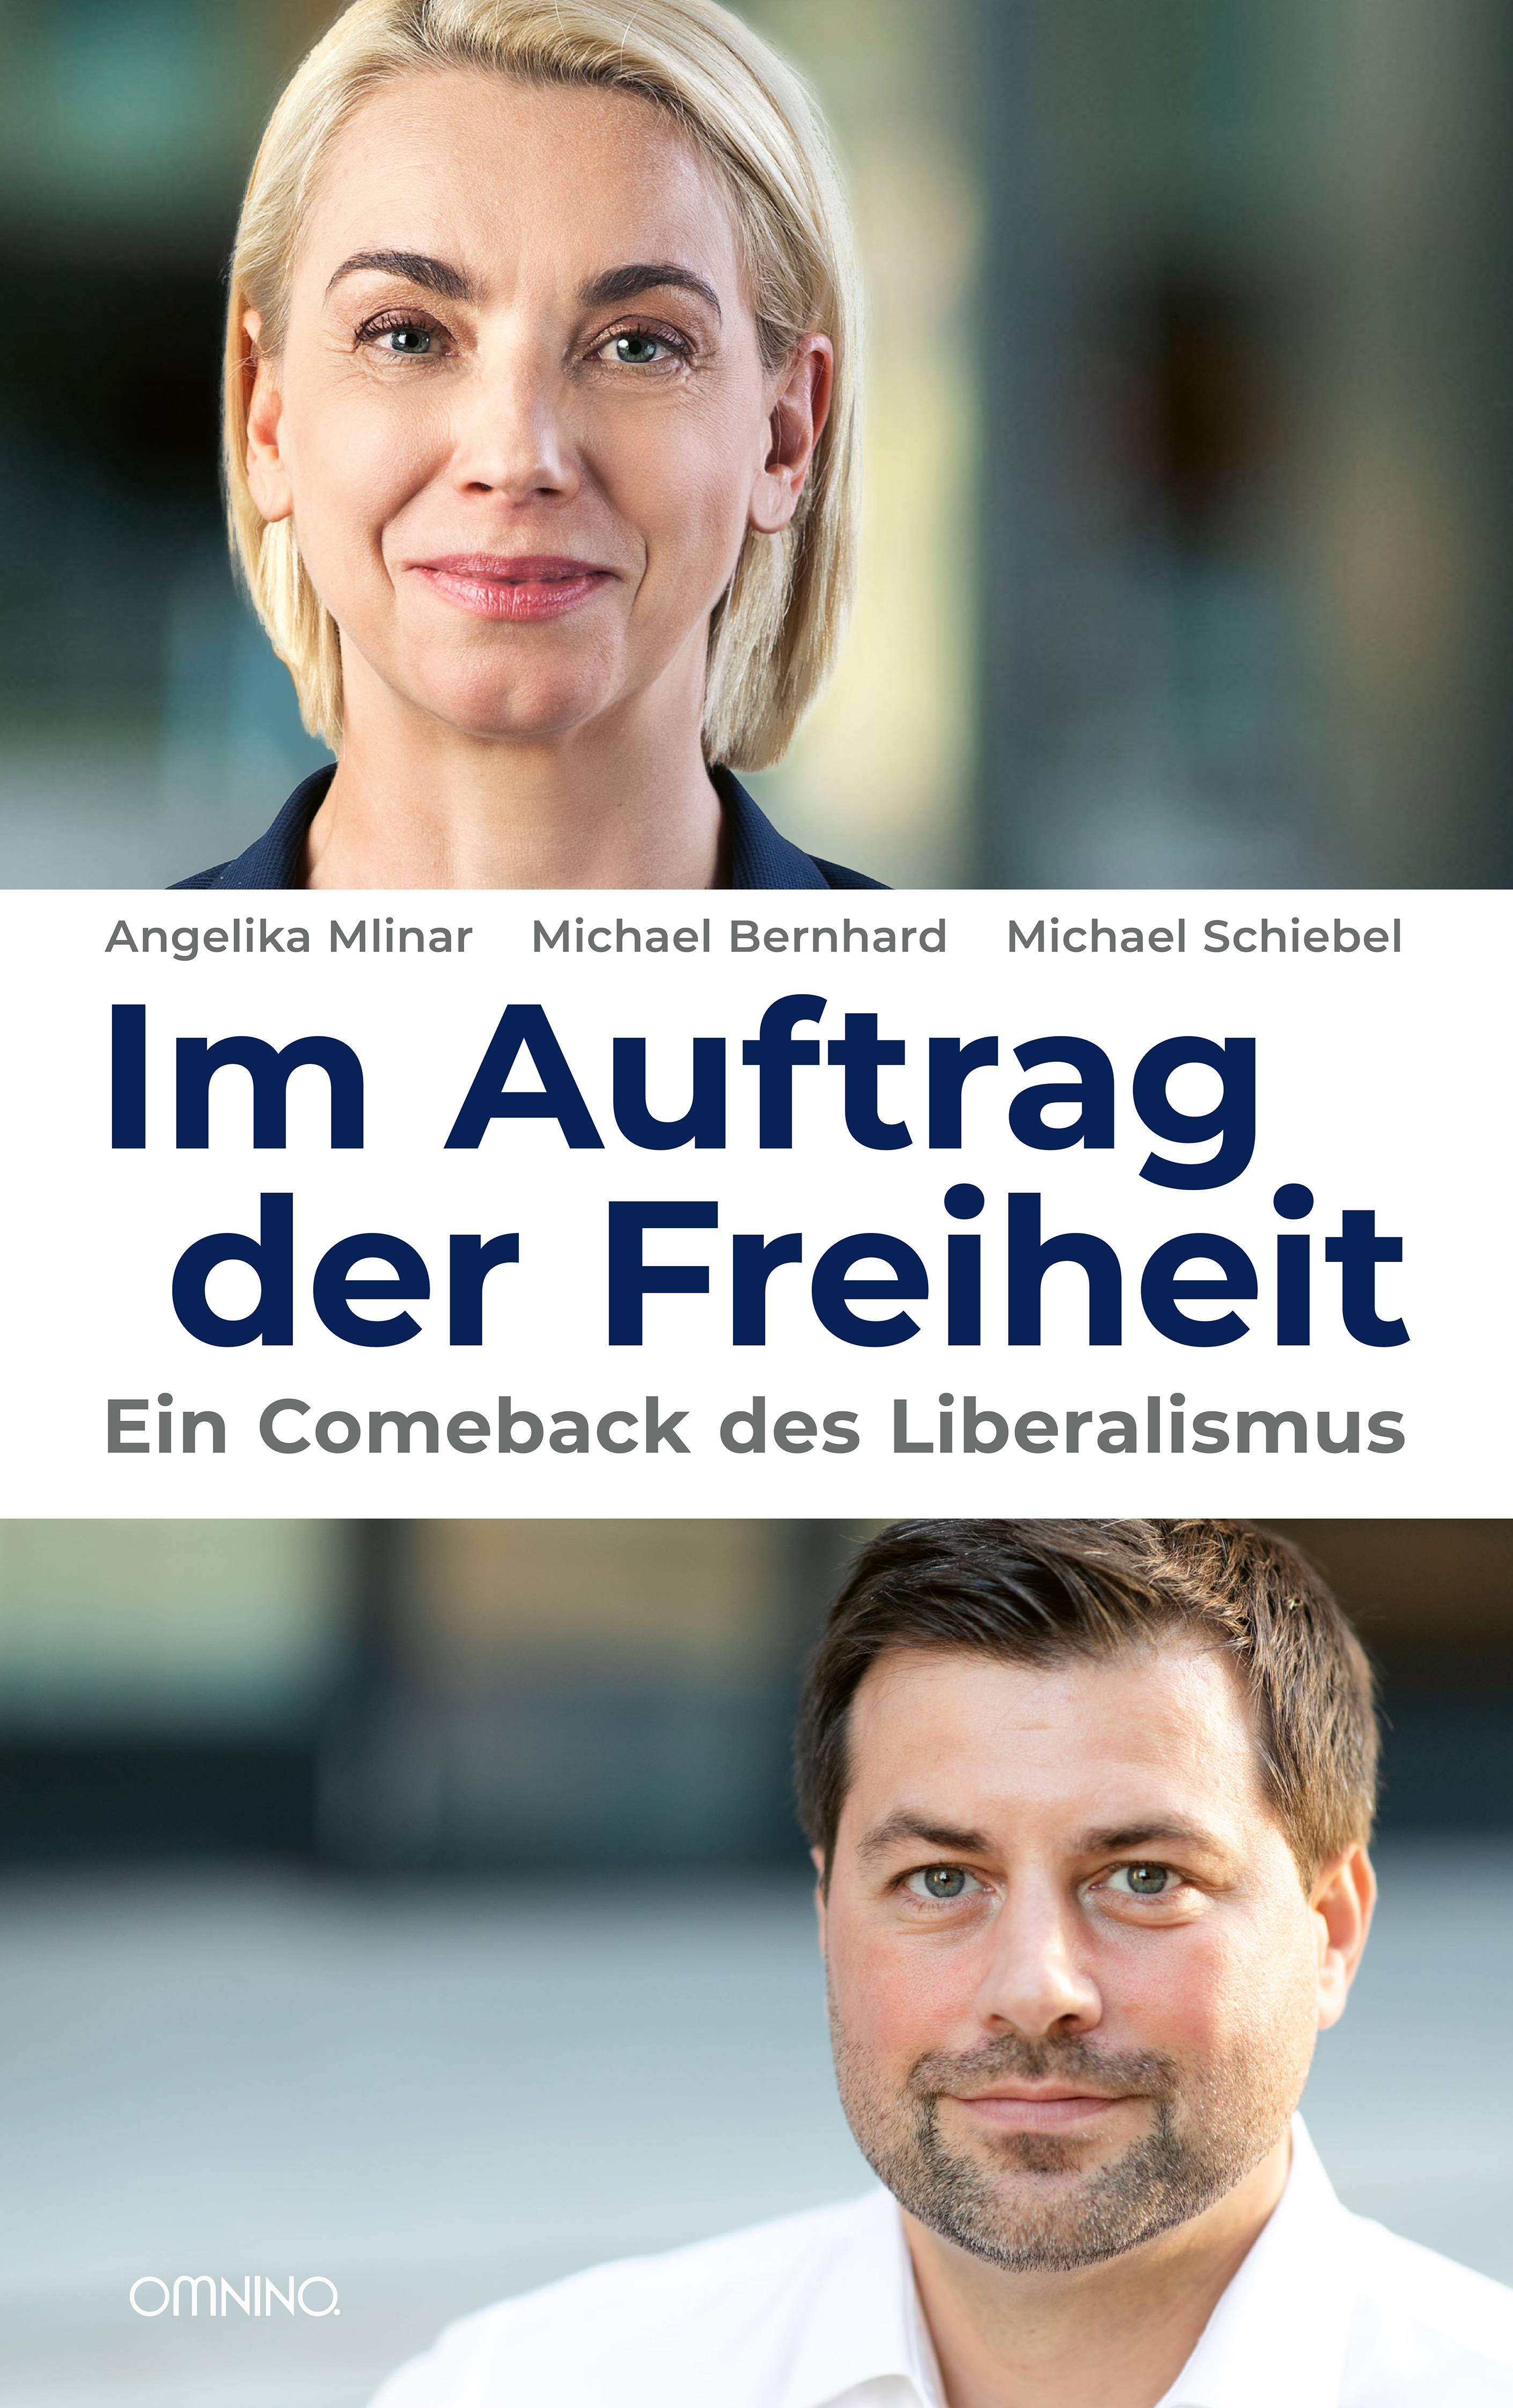 Im Auftrag der Freiheit : Ein Comeback des Liberalismus. Ein Buch von Angelika Mlinar, Michael Bernhard und Michael Schiebel